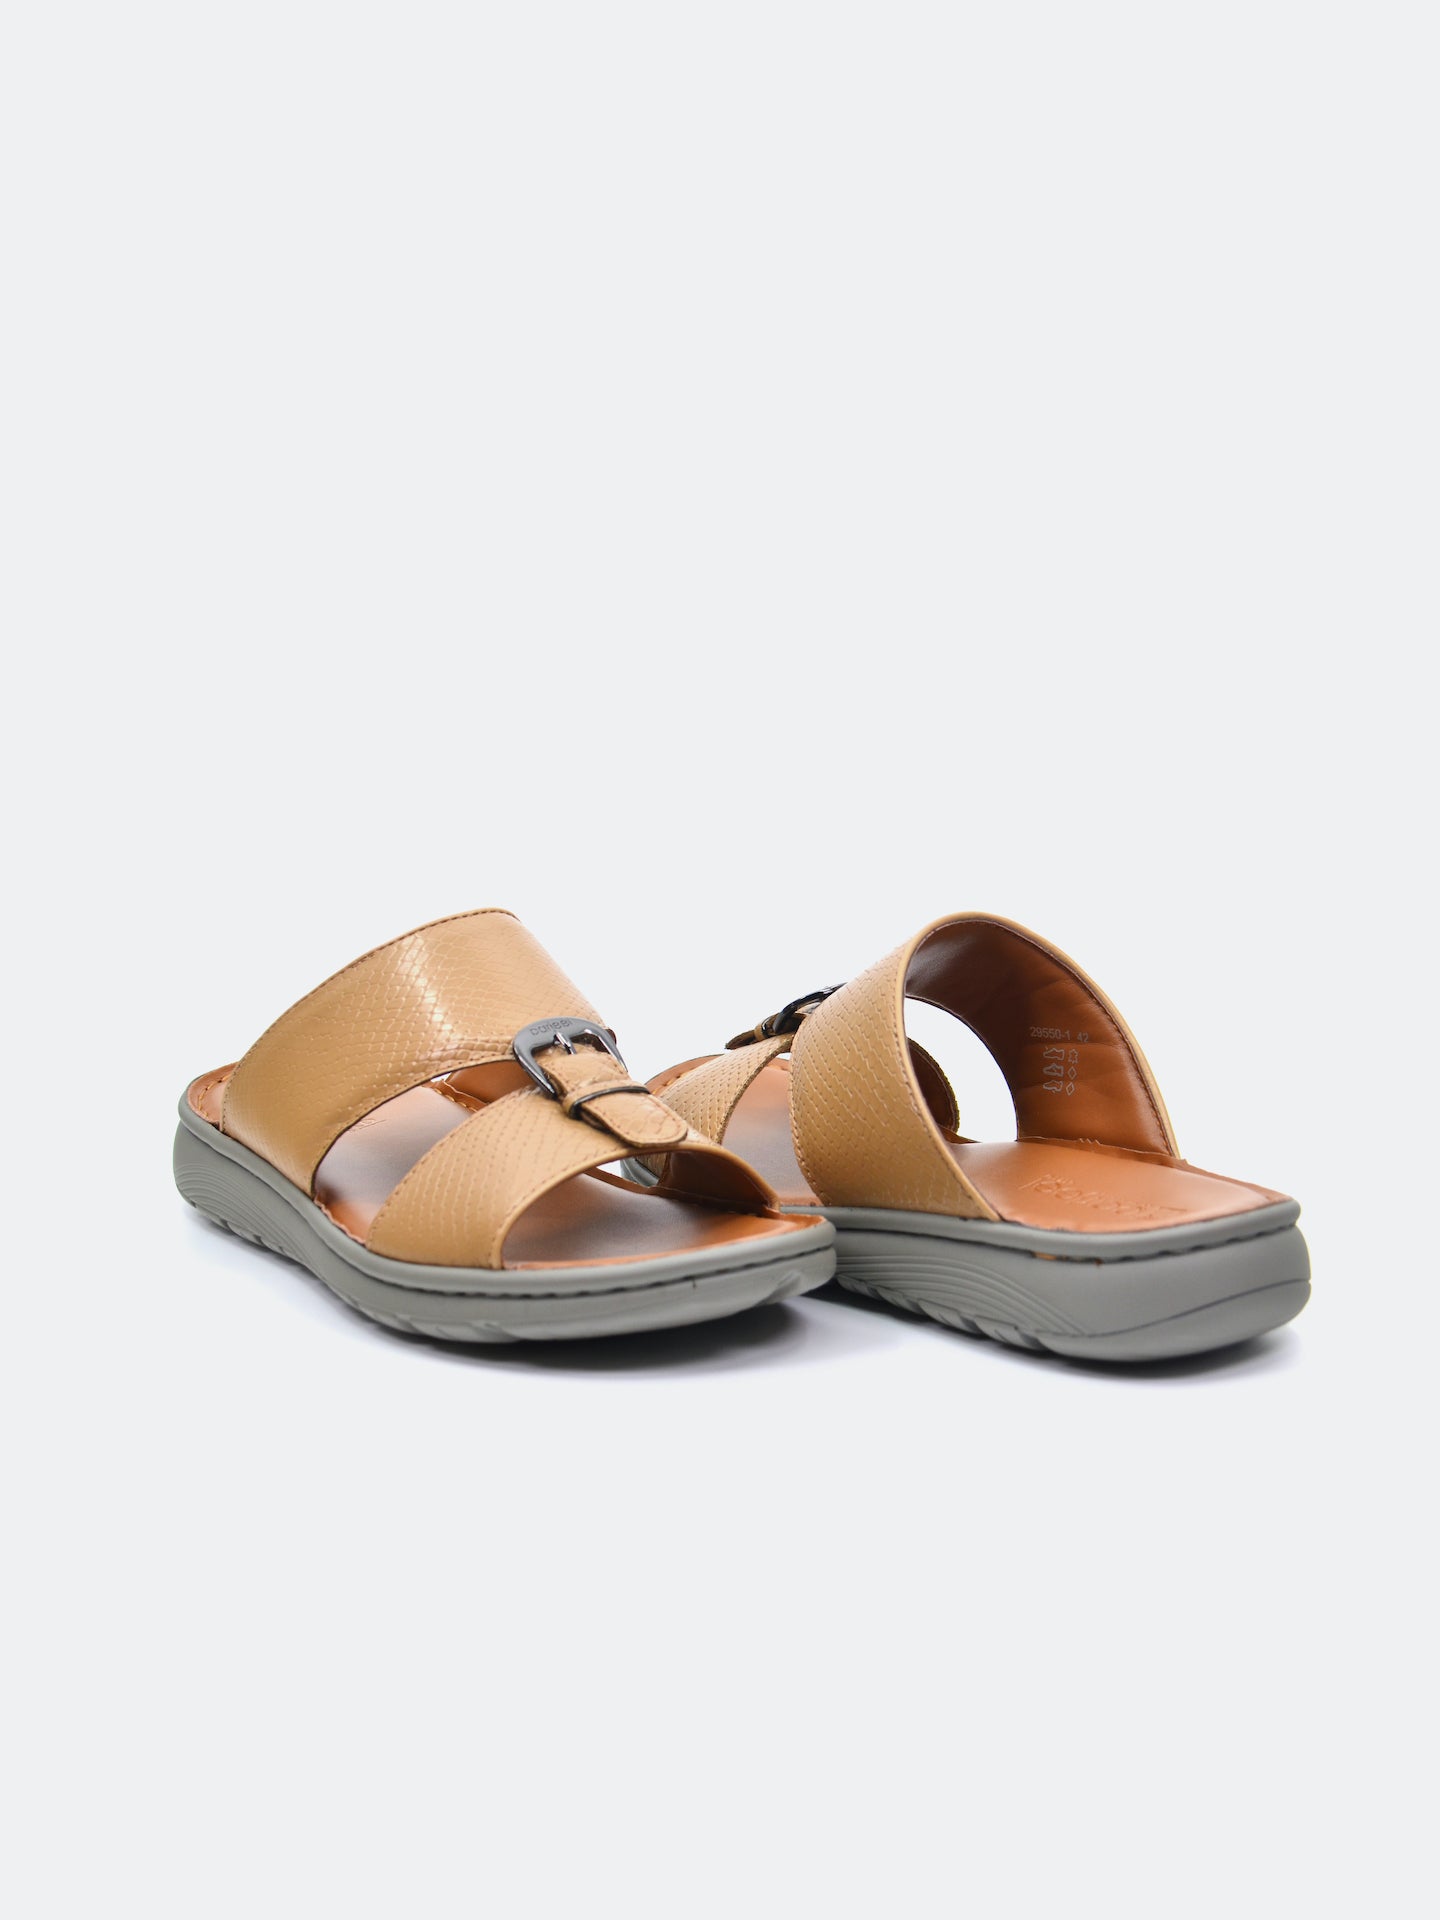 Barjeel Uno 29550-1 Men's Arabic Sandals #color_Beige